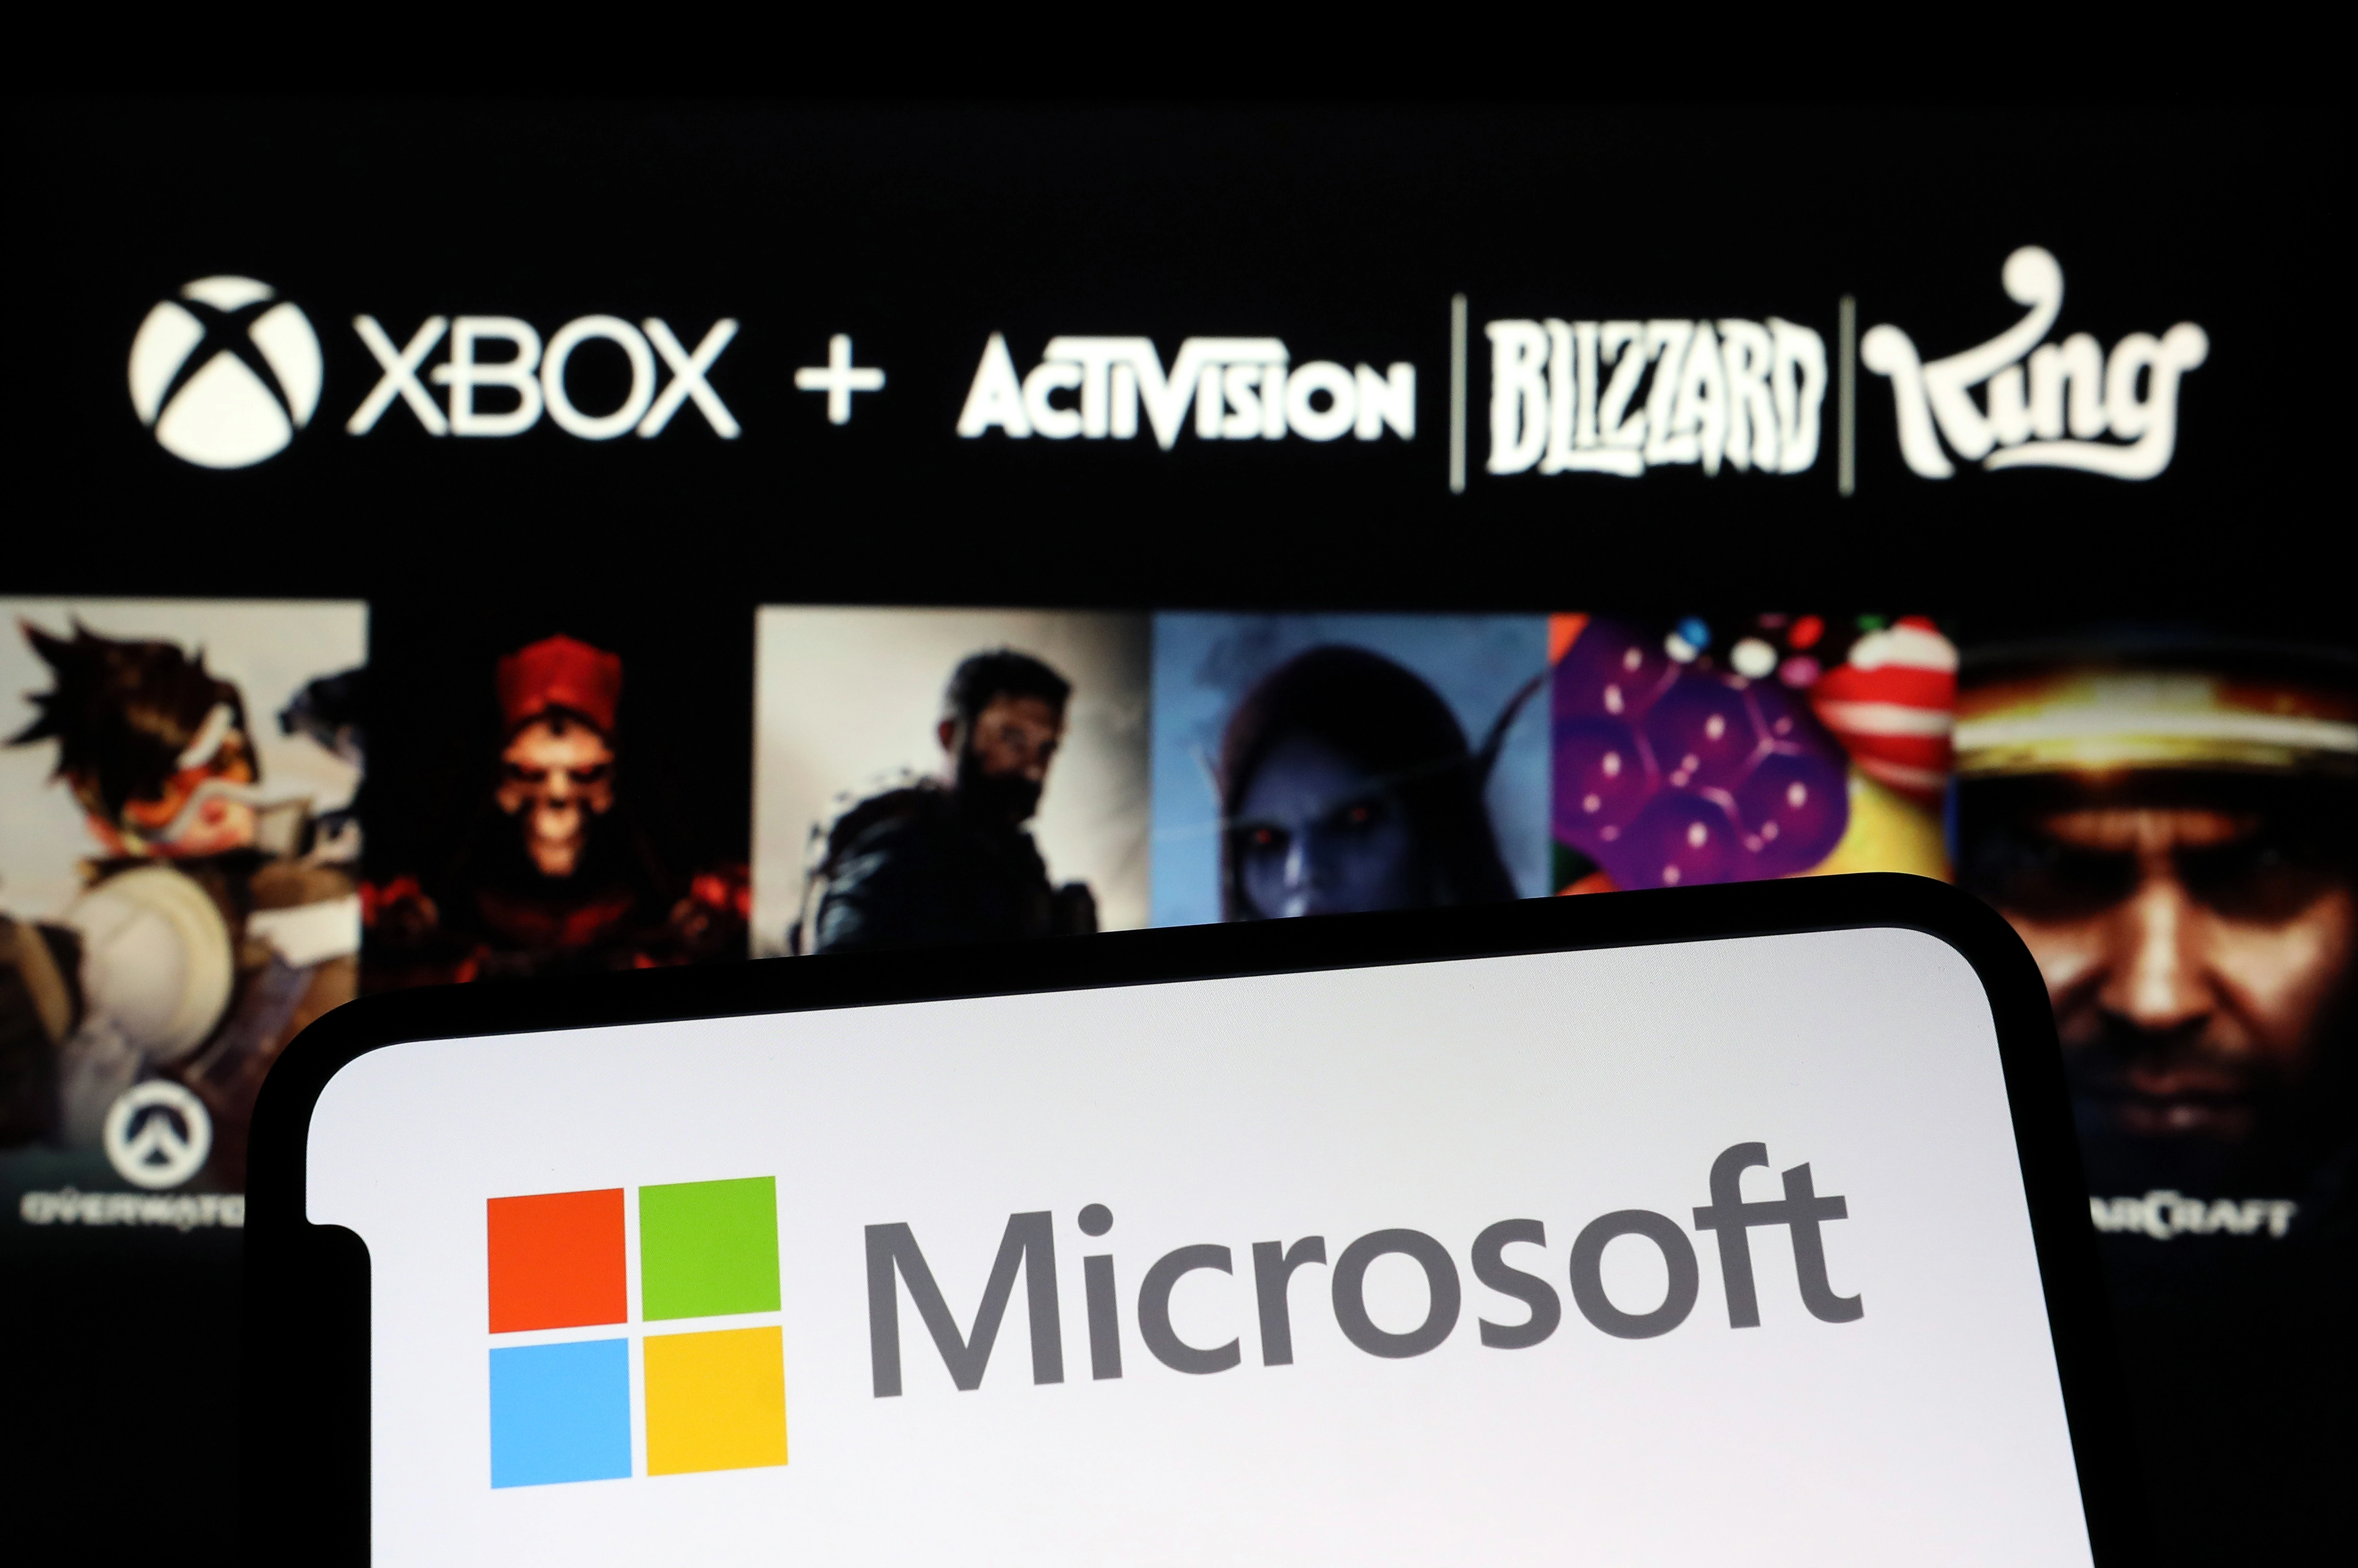 L'accord entre Microsoft et Activision devrait être approuvé par les régulateurs européens, selon Reuters.